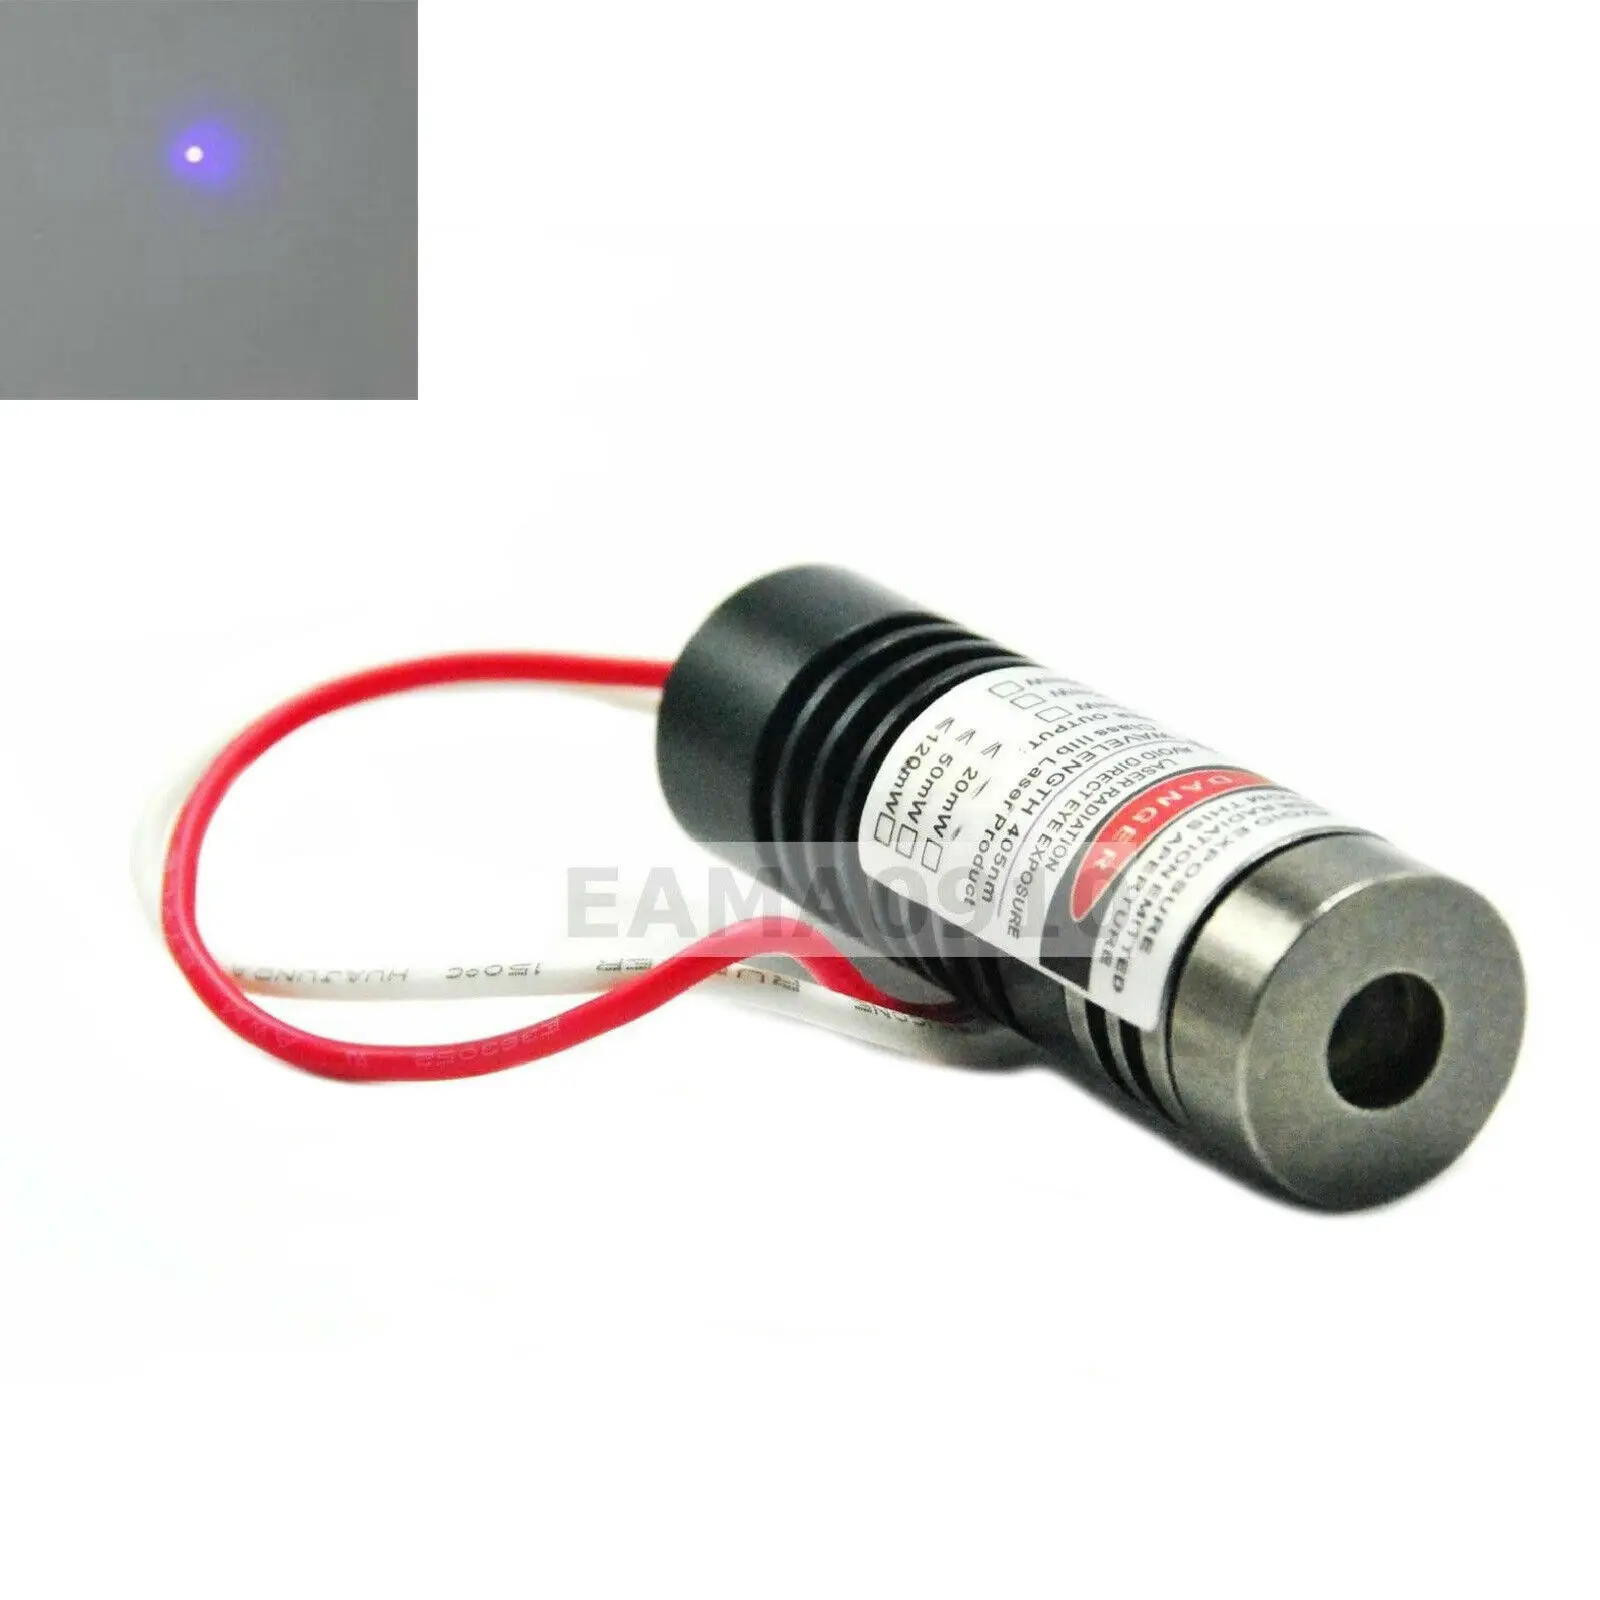 

Industrial 405nm 200mW Violet/Blue Dot Diode Lasers 5V Module w/Driver In Adjust